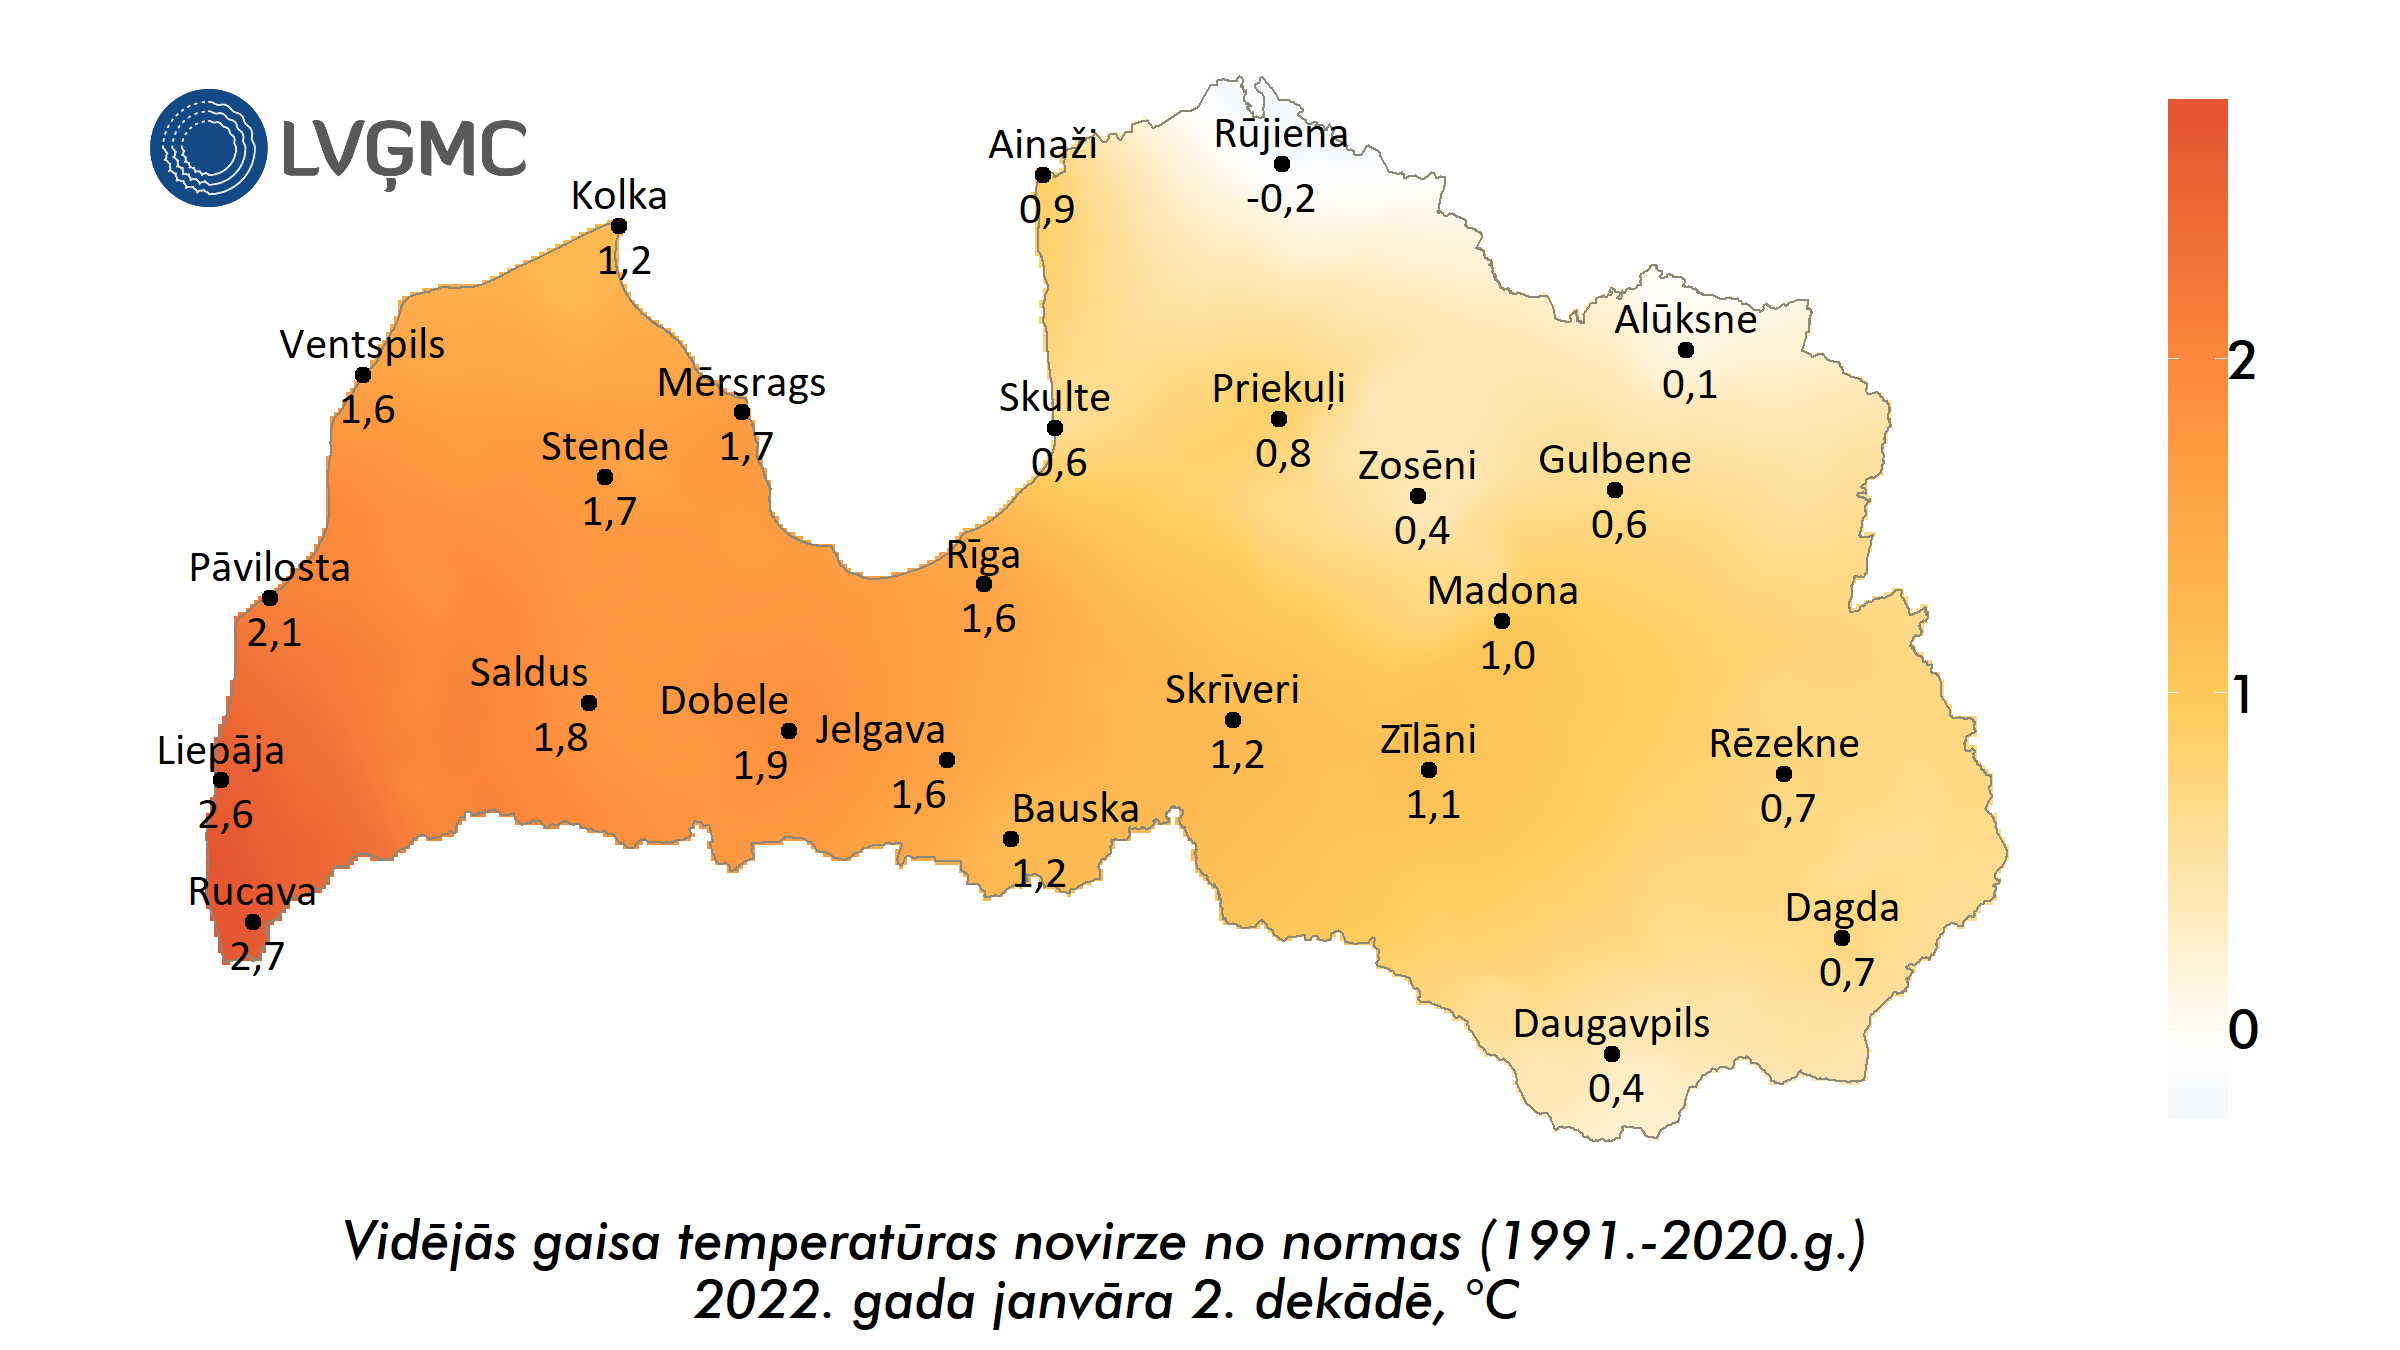 Vidējās gaisa temperatūras novirze no normas 2022. gada janvāra 2. dekādē, °C 